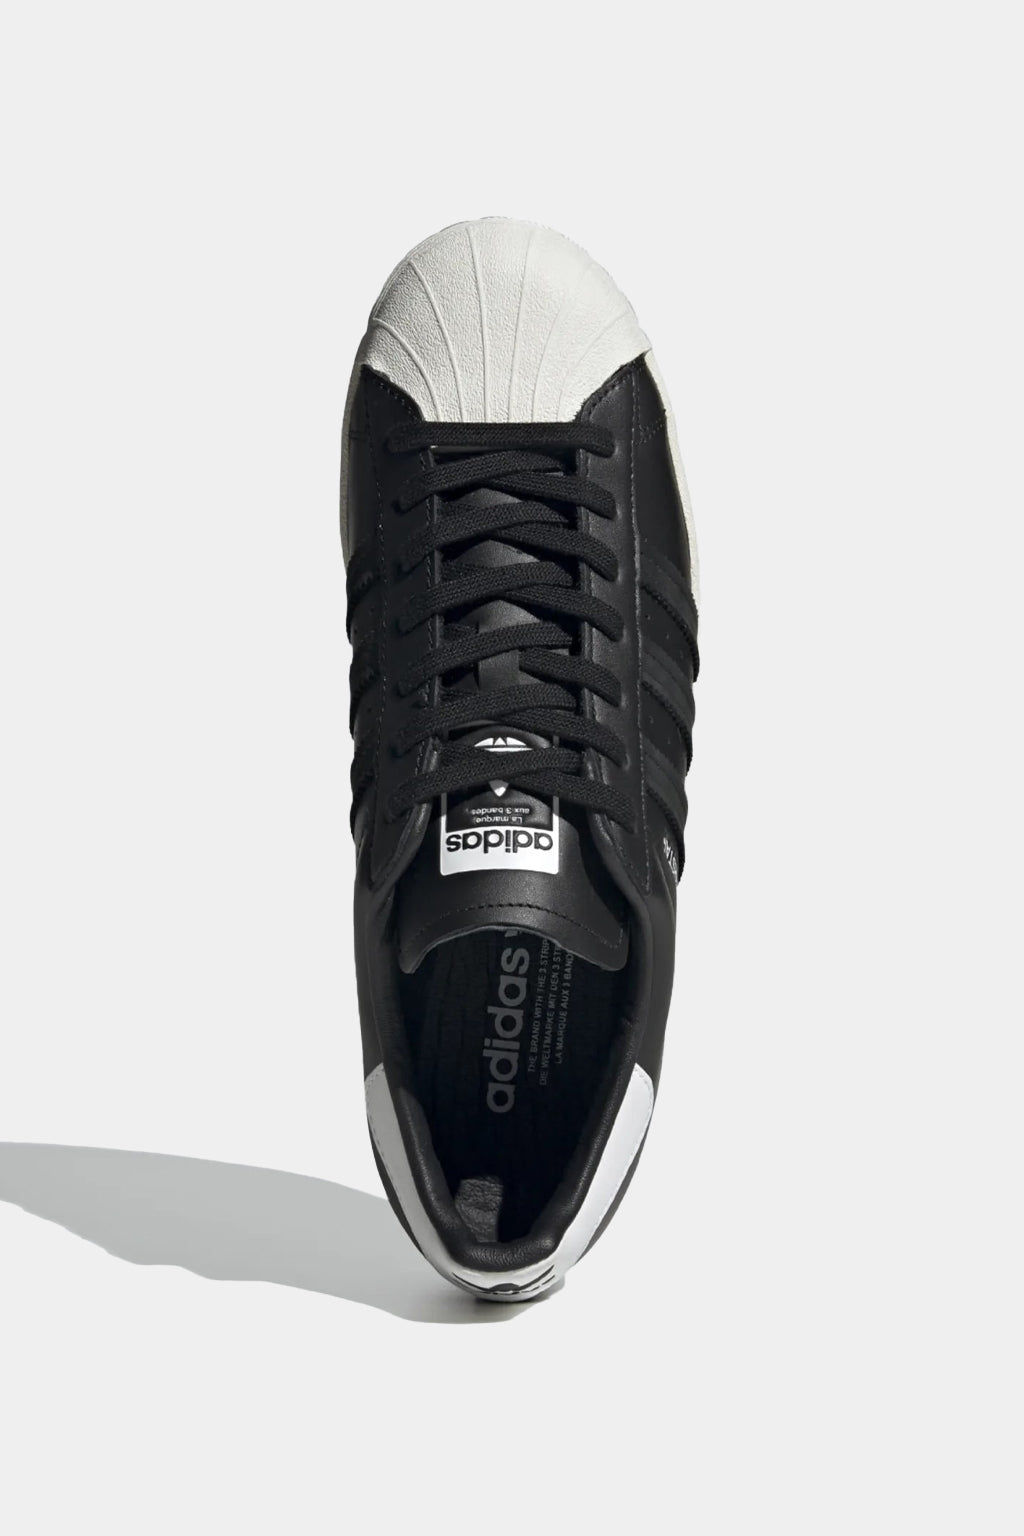 Adidas Originals - Superstar Shoes